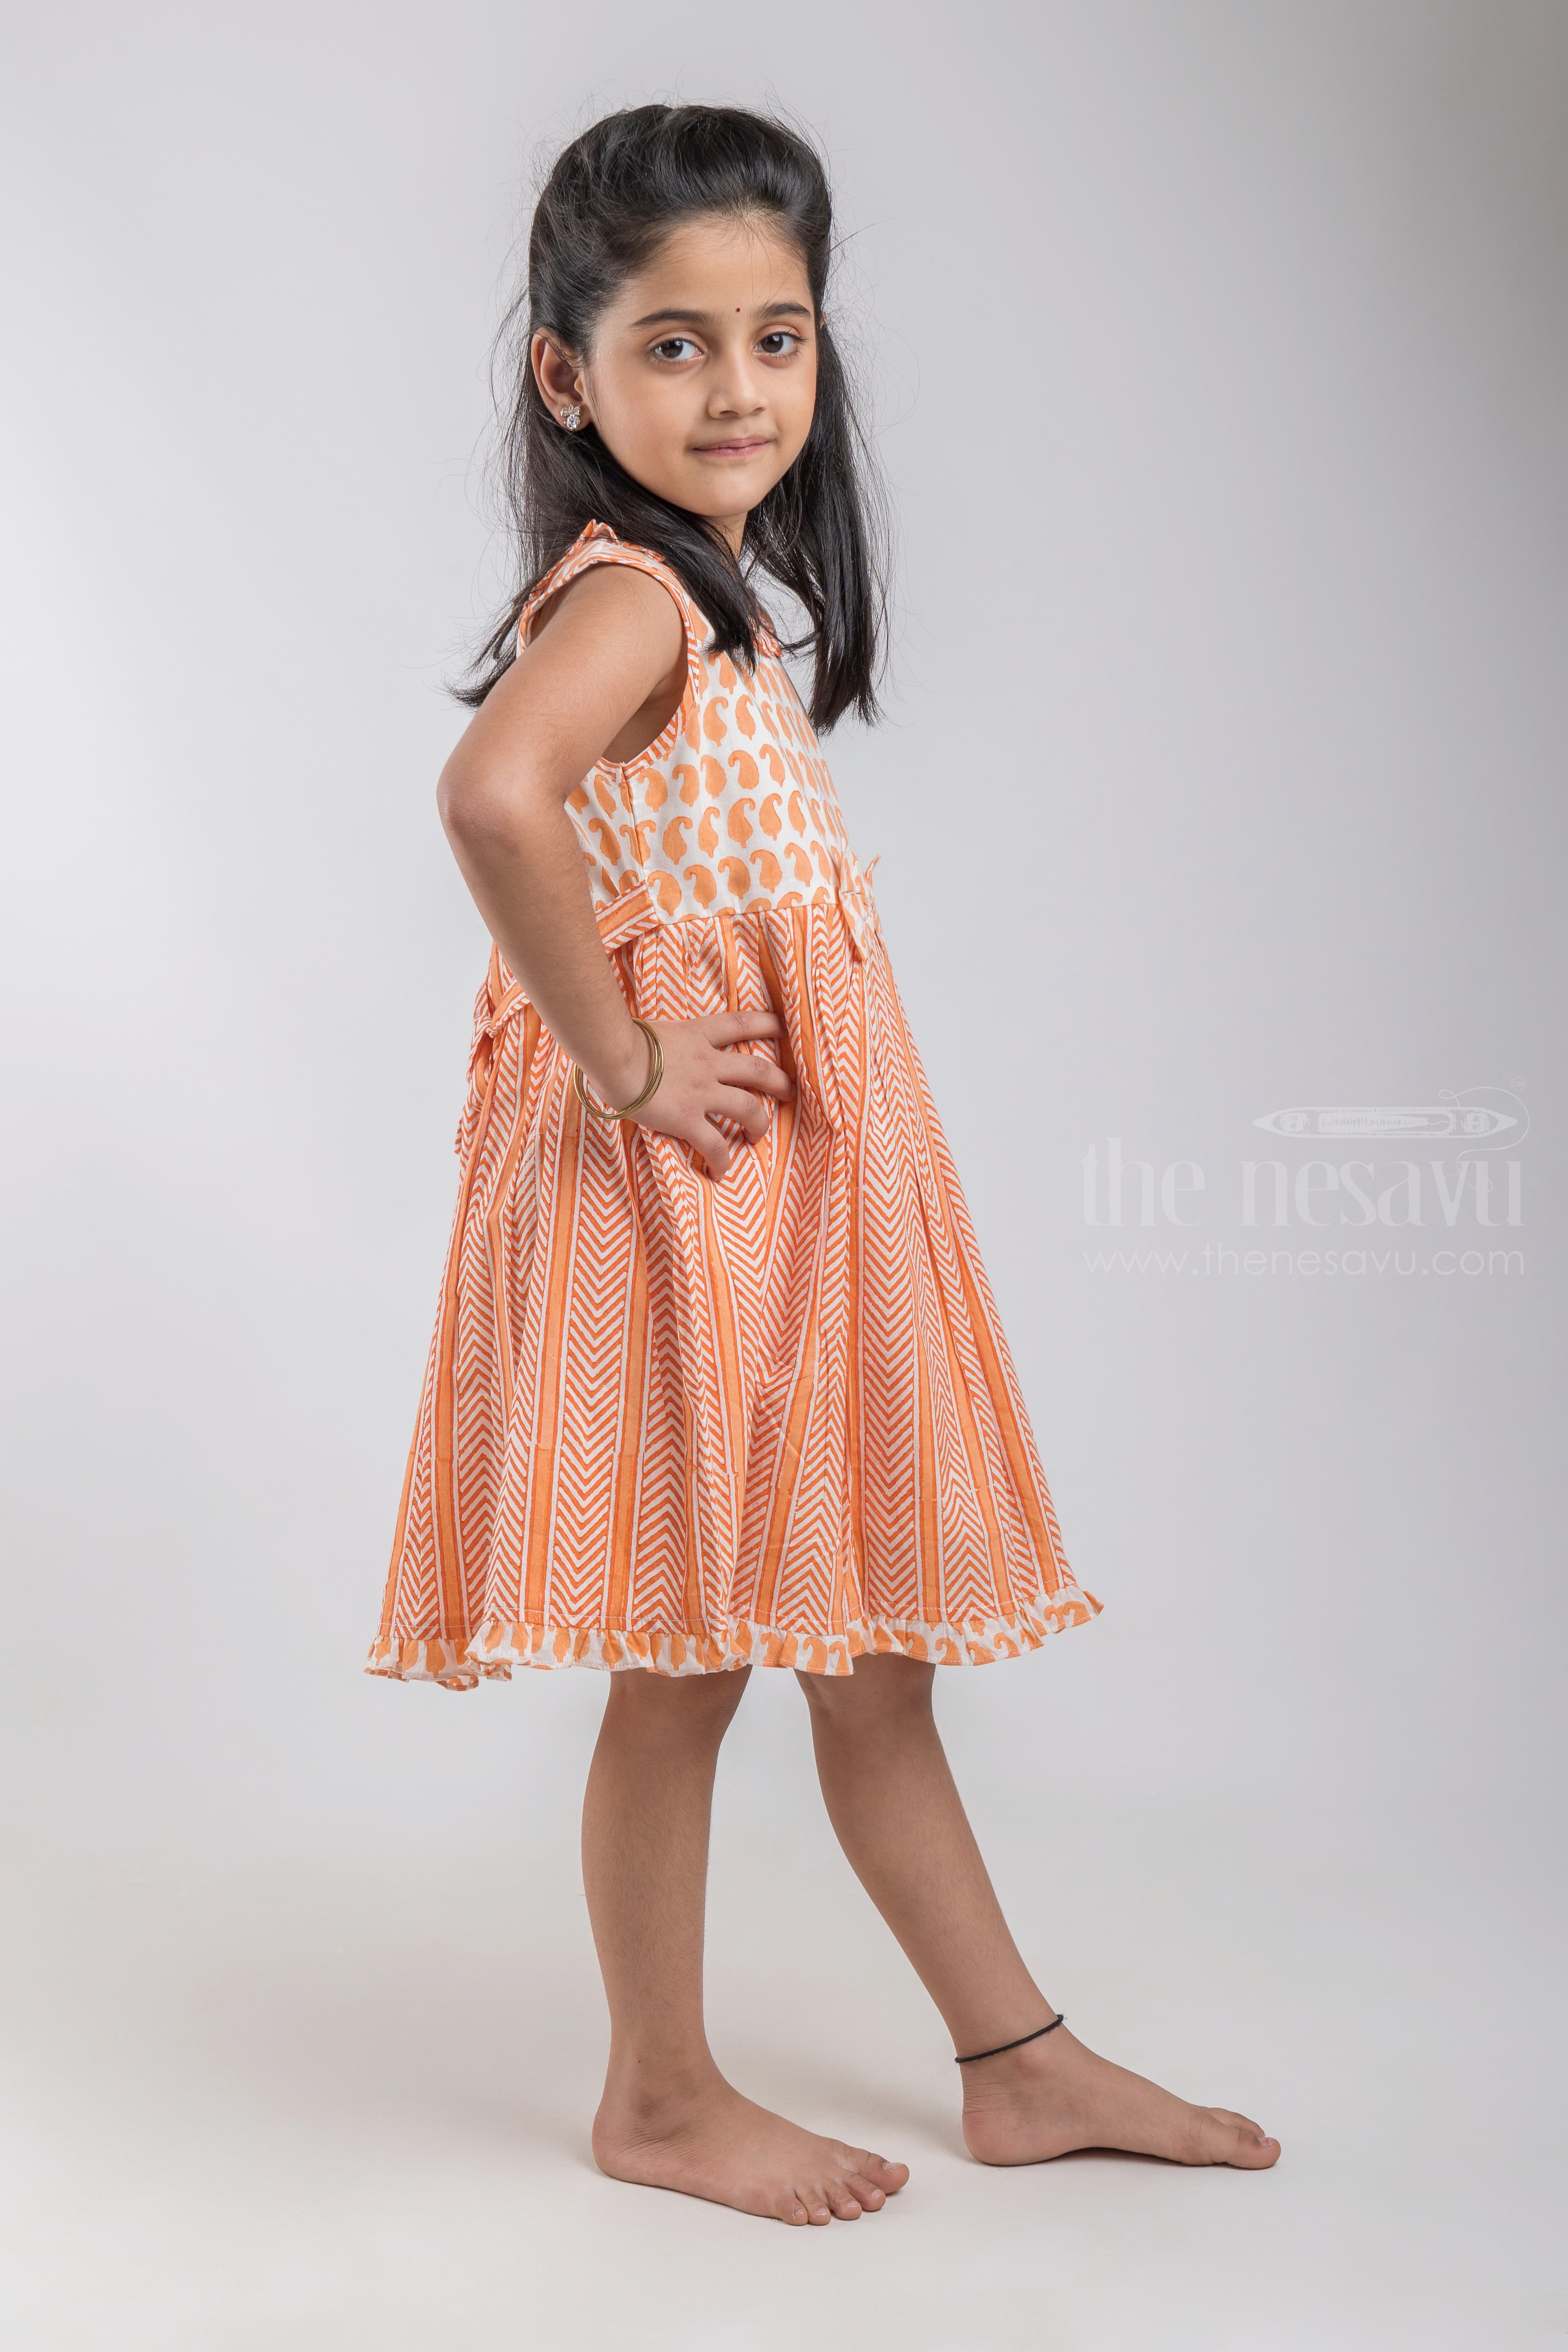 Top 20 Cotton Dress Ideas For Girl Kids  Designer Wear Collection  The  Nesavu  The Nesavu